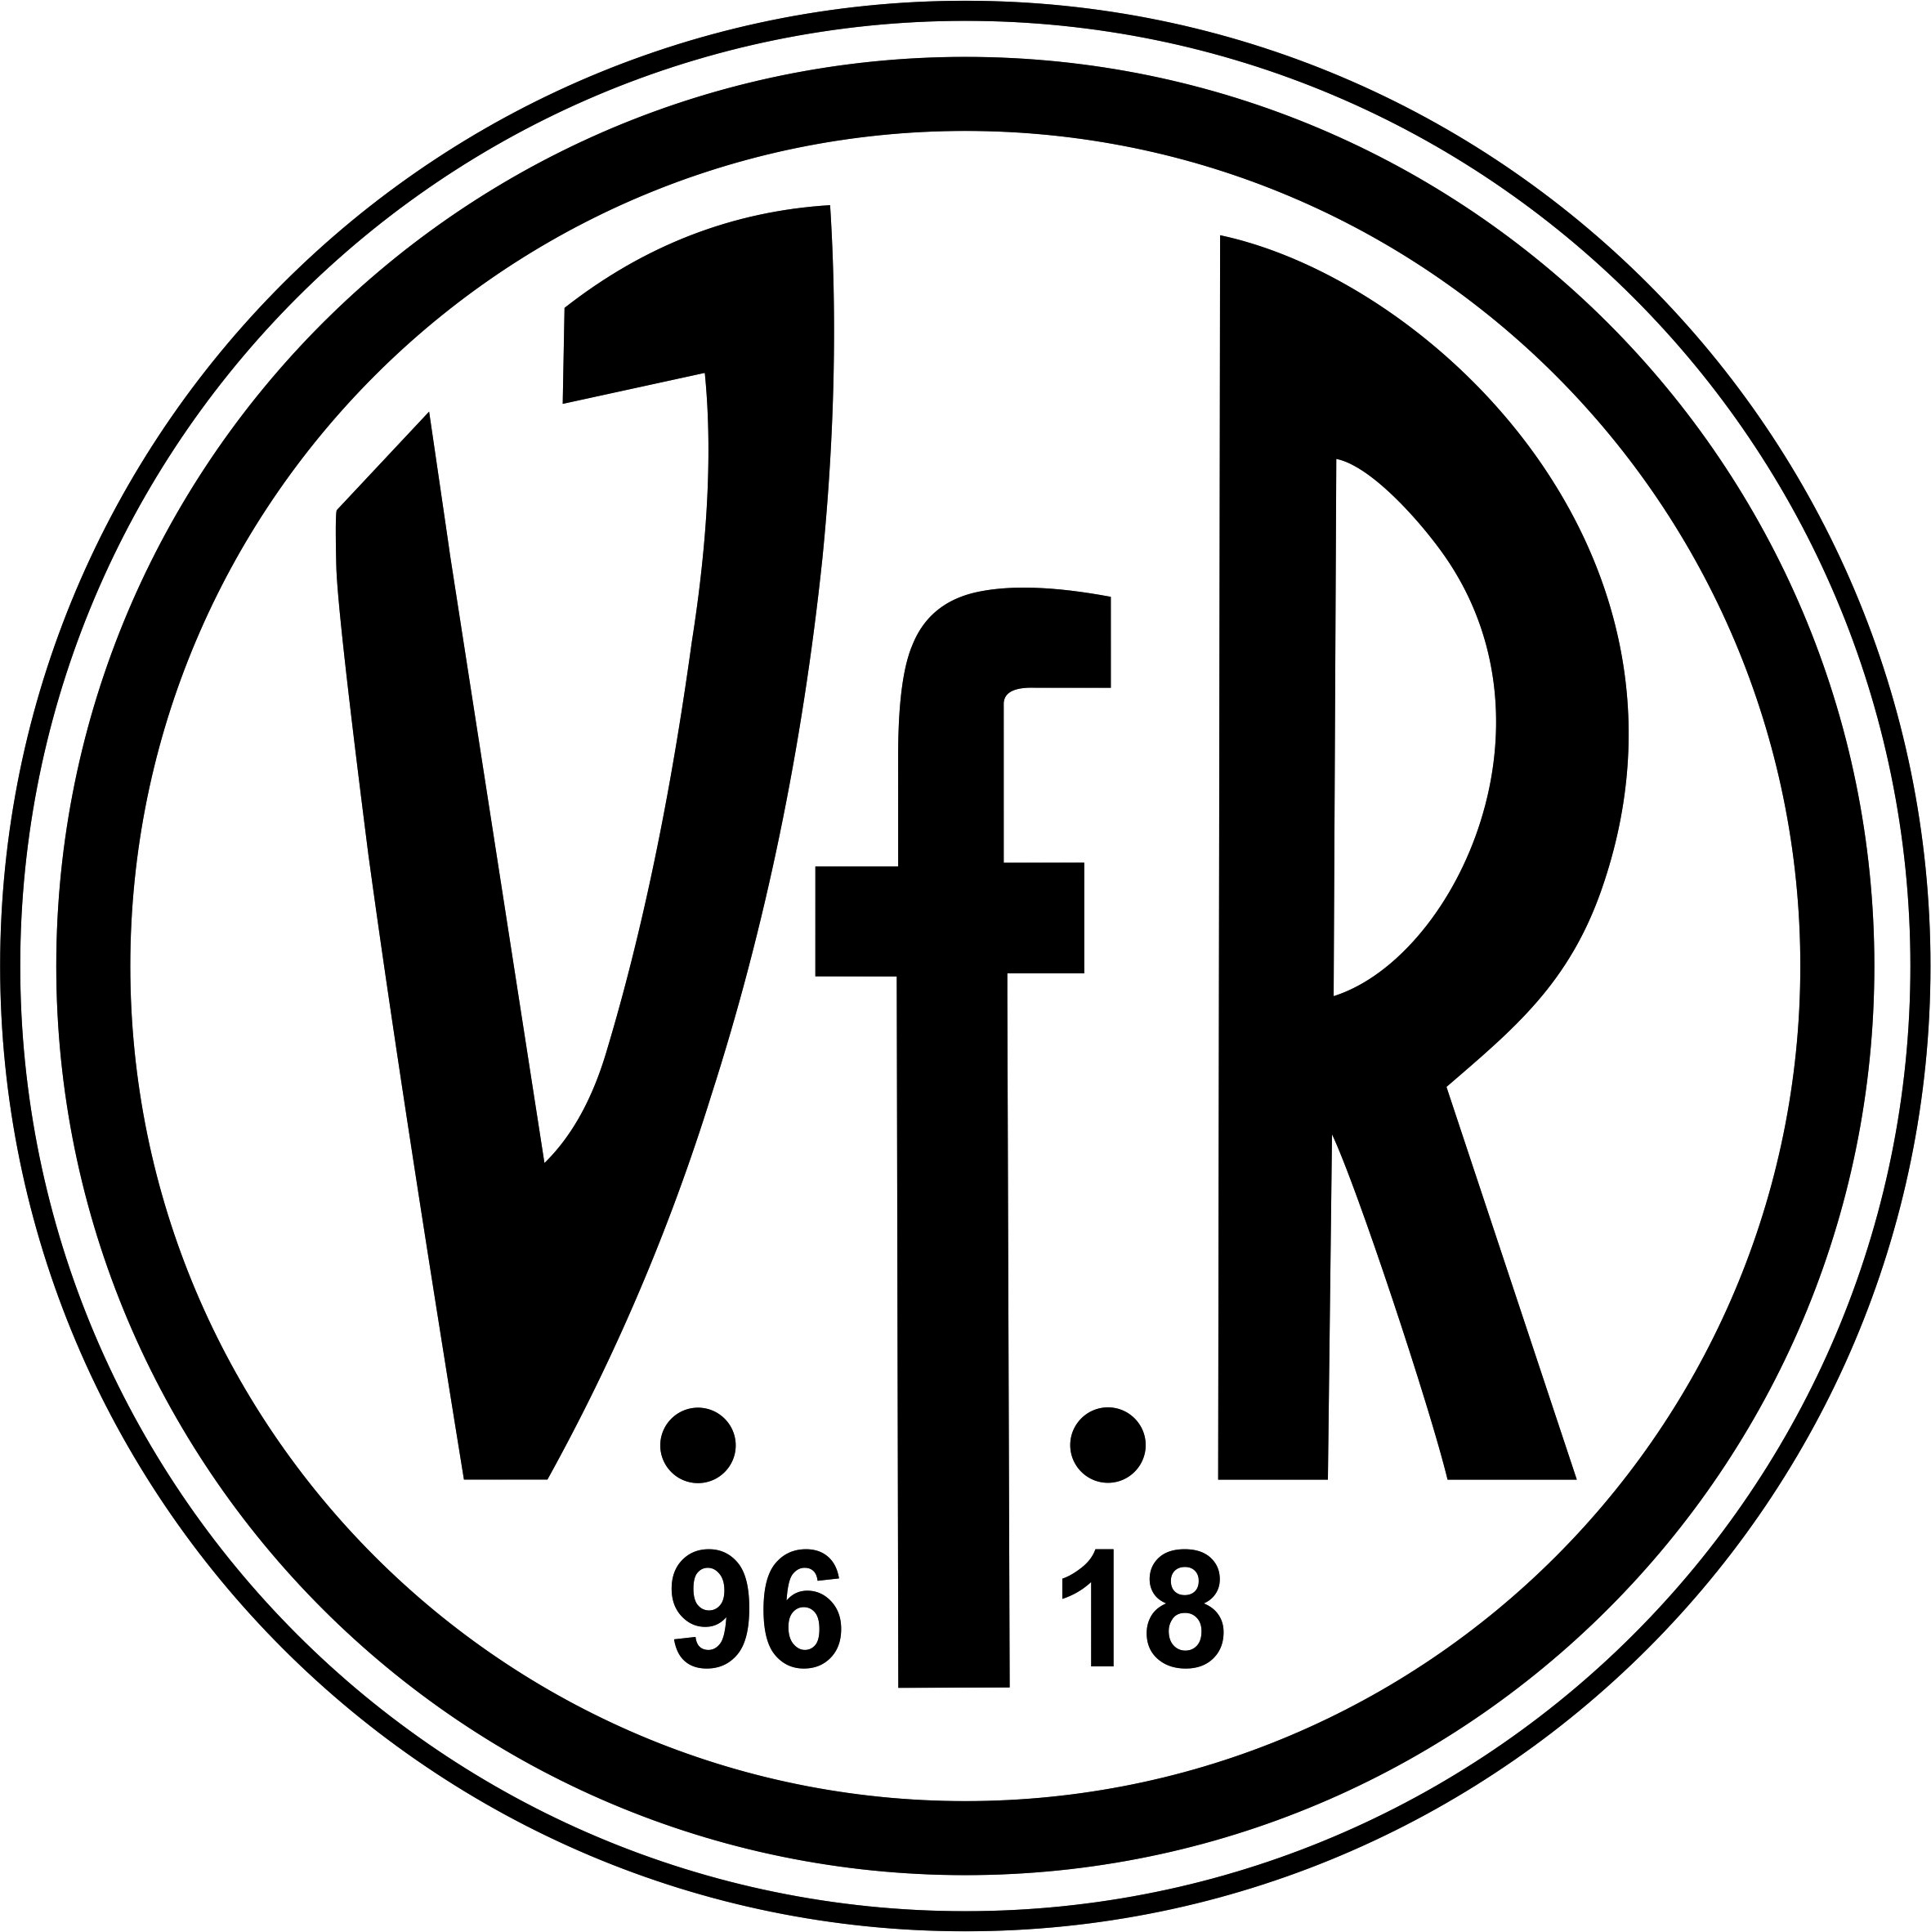 Verein für Rasenspiele 96 / 18 e.V.